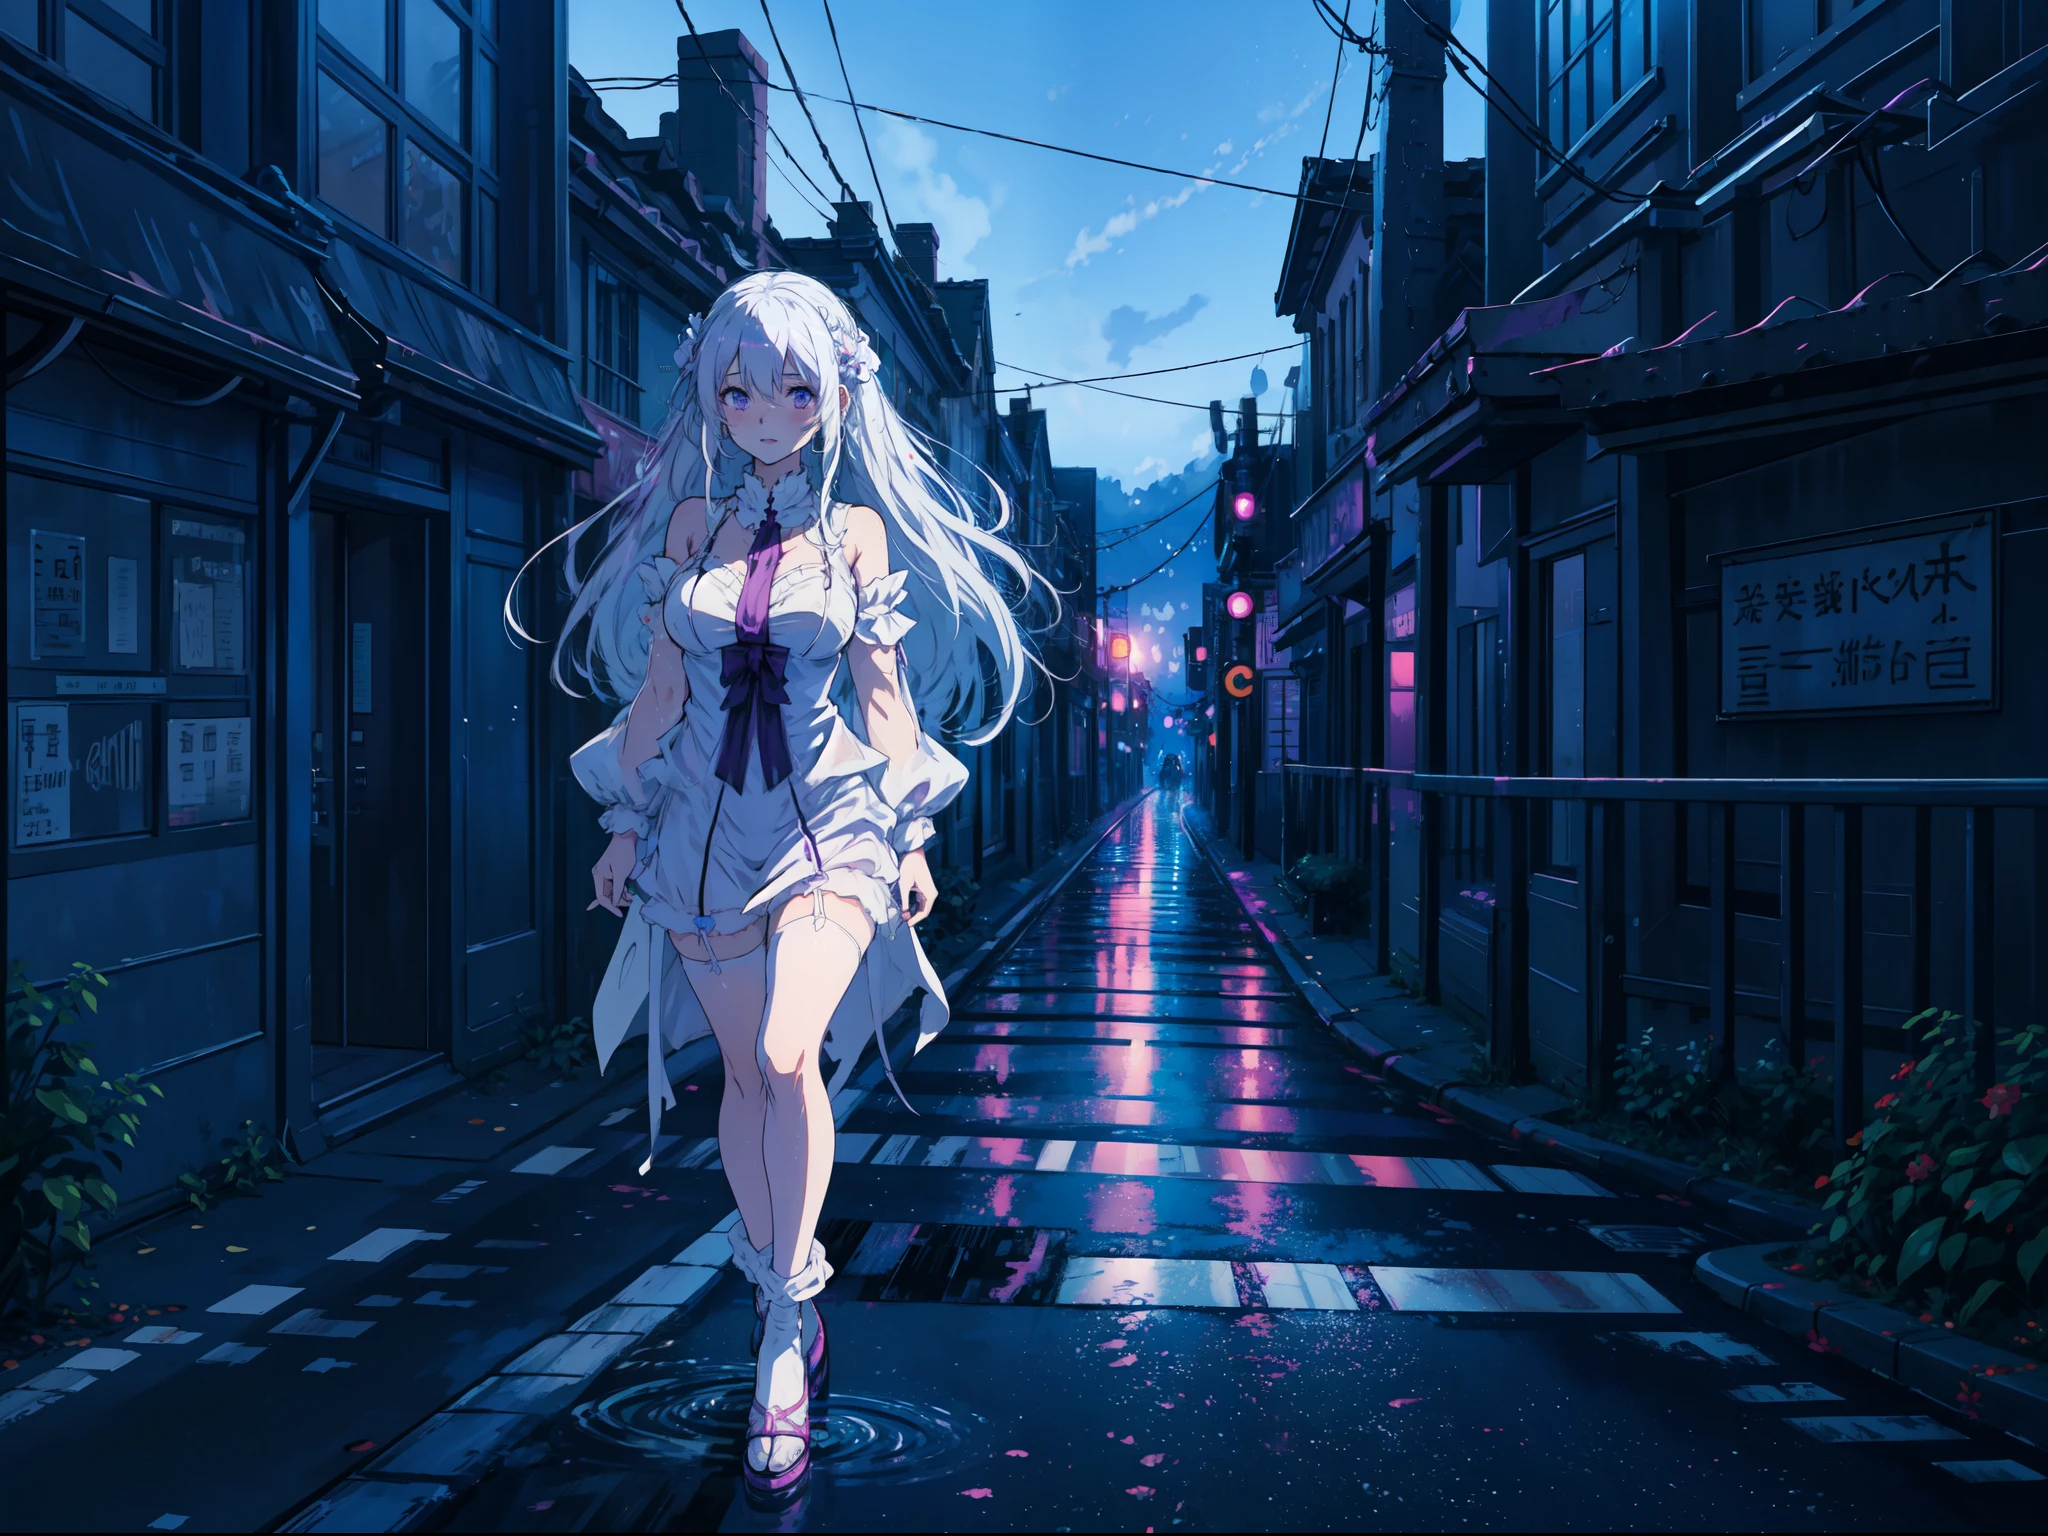 (Estilo de arte anime), Emilia de Re Zero,longos cabelos brancos olhos roxos, rubor, vestindo lingerie, andando na rua da cidade à noite, rua molhada,cores vibrantes, expressão alegre, rubor, pose dinâmica.